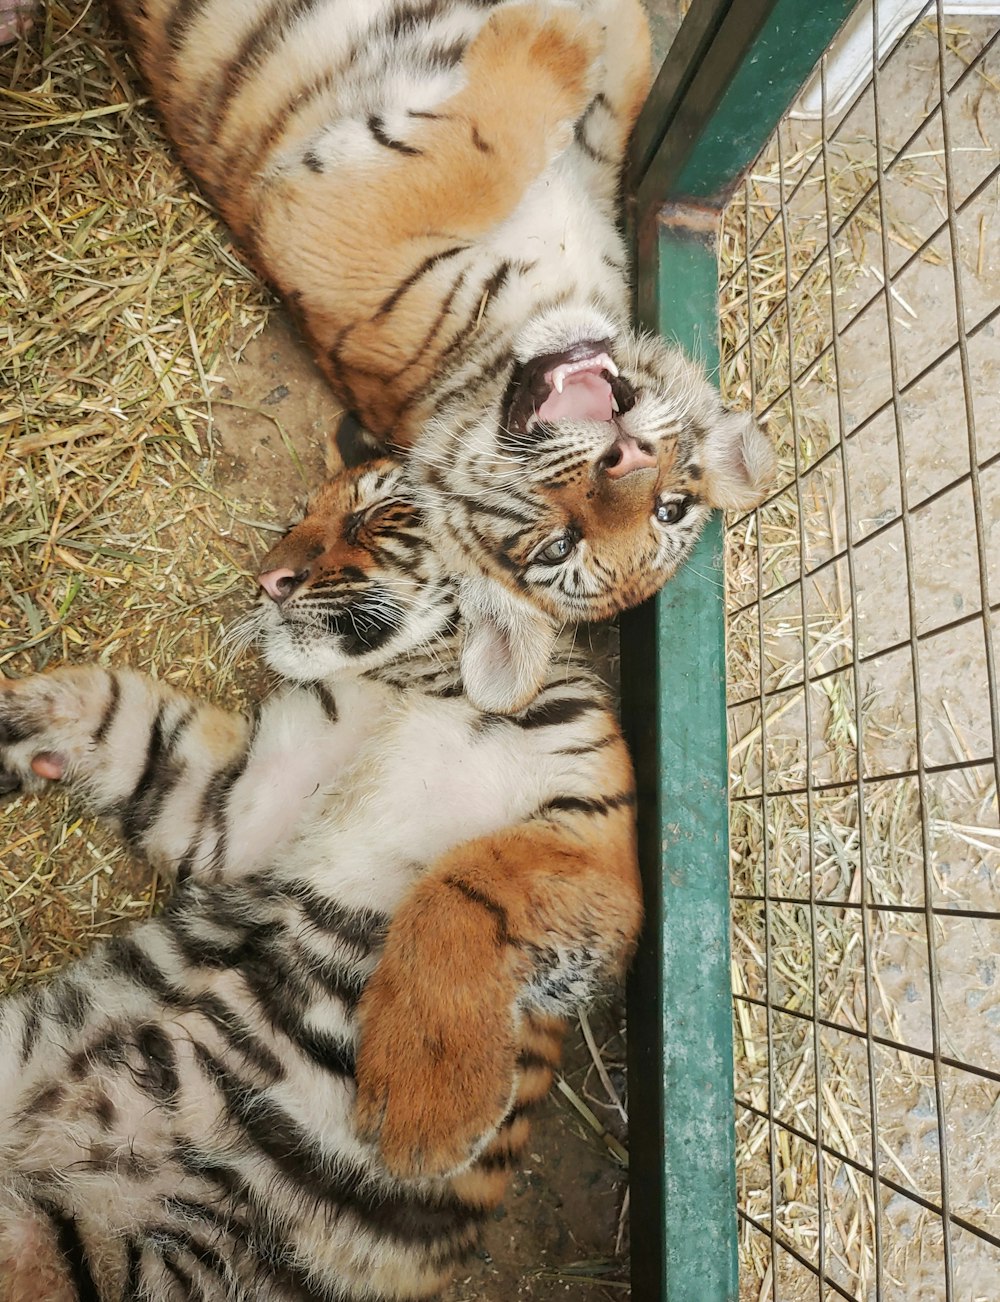 Dos tigres